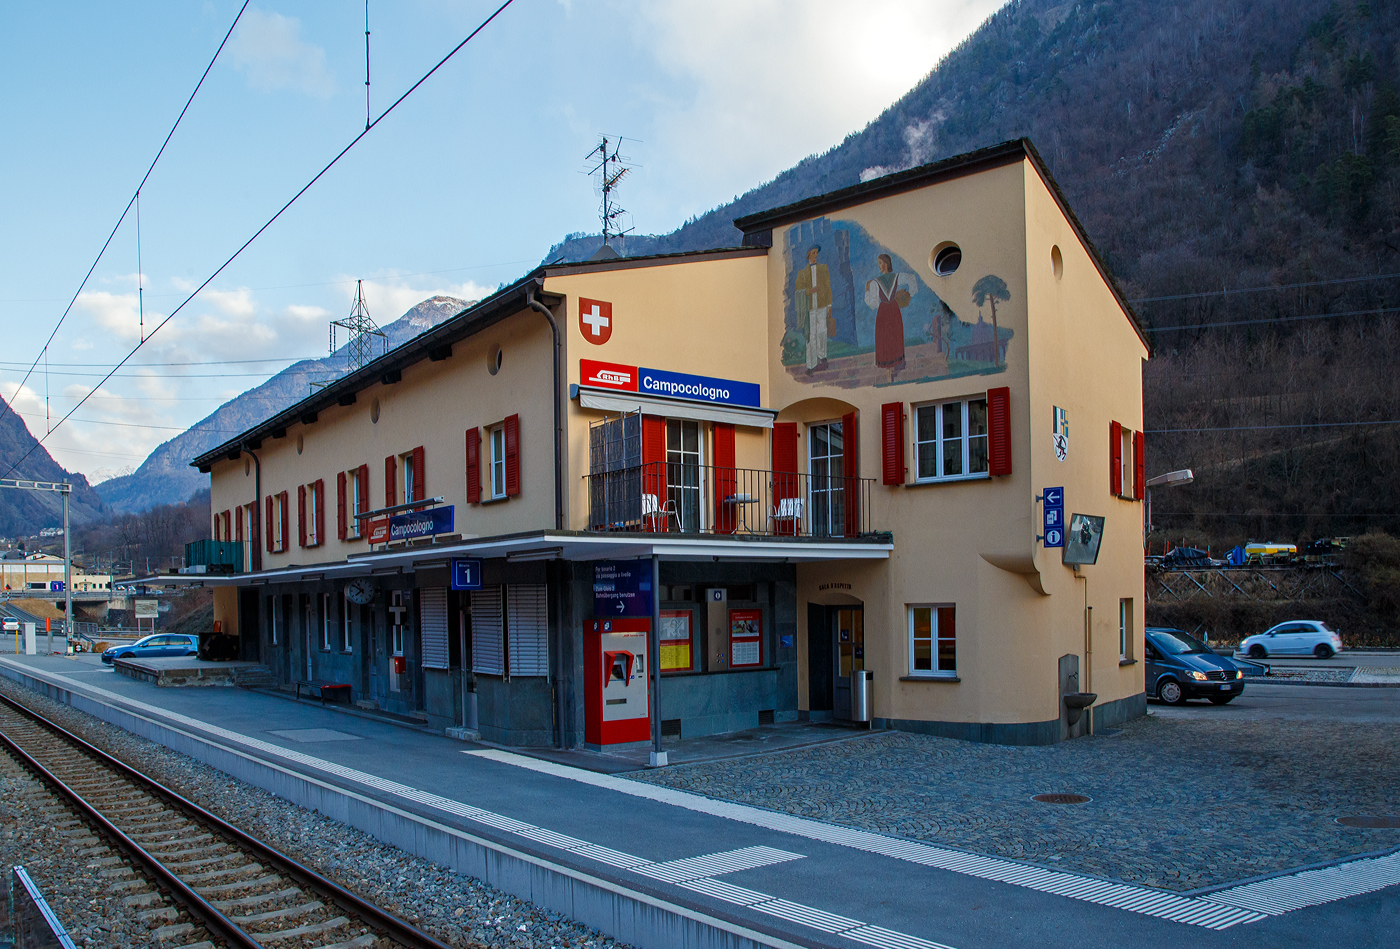 Das Empfangsgebäude vom RhB Bahnhof Campocologno (553 m ü. M.) an der Berninabahn (km 57,649) am 20 Februar 2017. 

Campocologno liegt zwischen Brusio und dem italienischen Tirano direkt an der Staatsgrenze Schweiz–Italien, so ist er vom Berninapass kommend der letzte (südlichste) Bahnhof auf RhB auf Schweizerstaatsgebiet. Mit seiner Höhe von 553 m ü. M. ist Campocologno der tiefstgelegene Ort des Puschlavs. Das Dorf hat rund 100 Einwohner, einen Straßenzoll, eine Kirche (Baujahr 1910–1914), ein Kraftwerk und den Bahnhof an der Berninabahn.